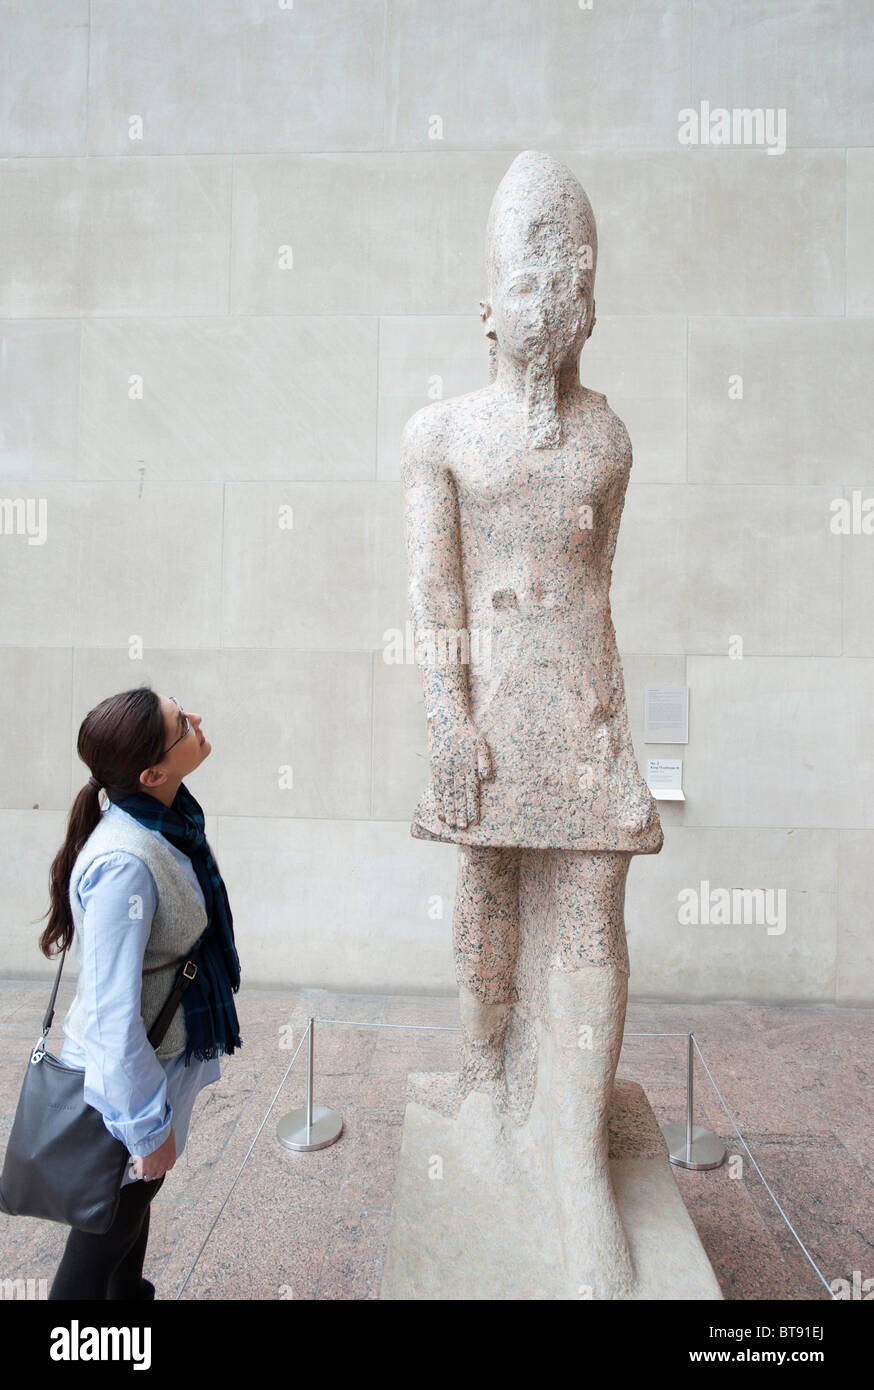 La scultura sul display in egiziano ala del Metropolitan Museum of Art di Manhattan , New York City, Stati Uniti d'America Foto Stock